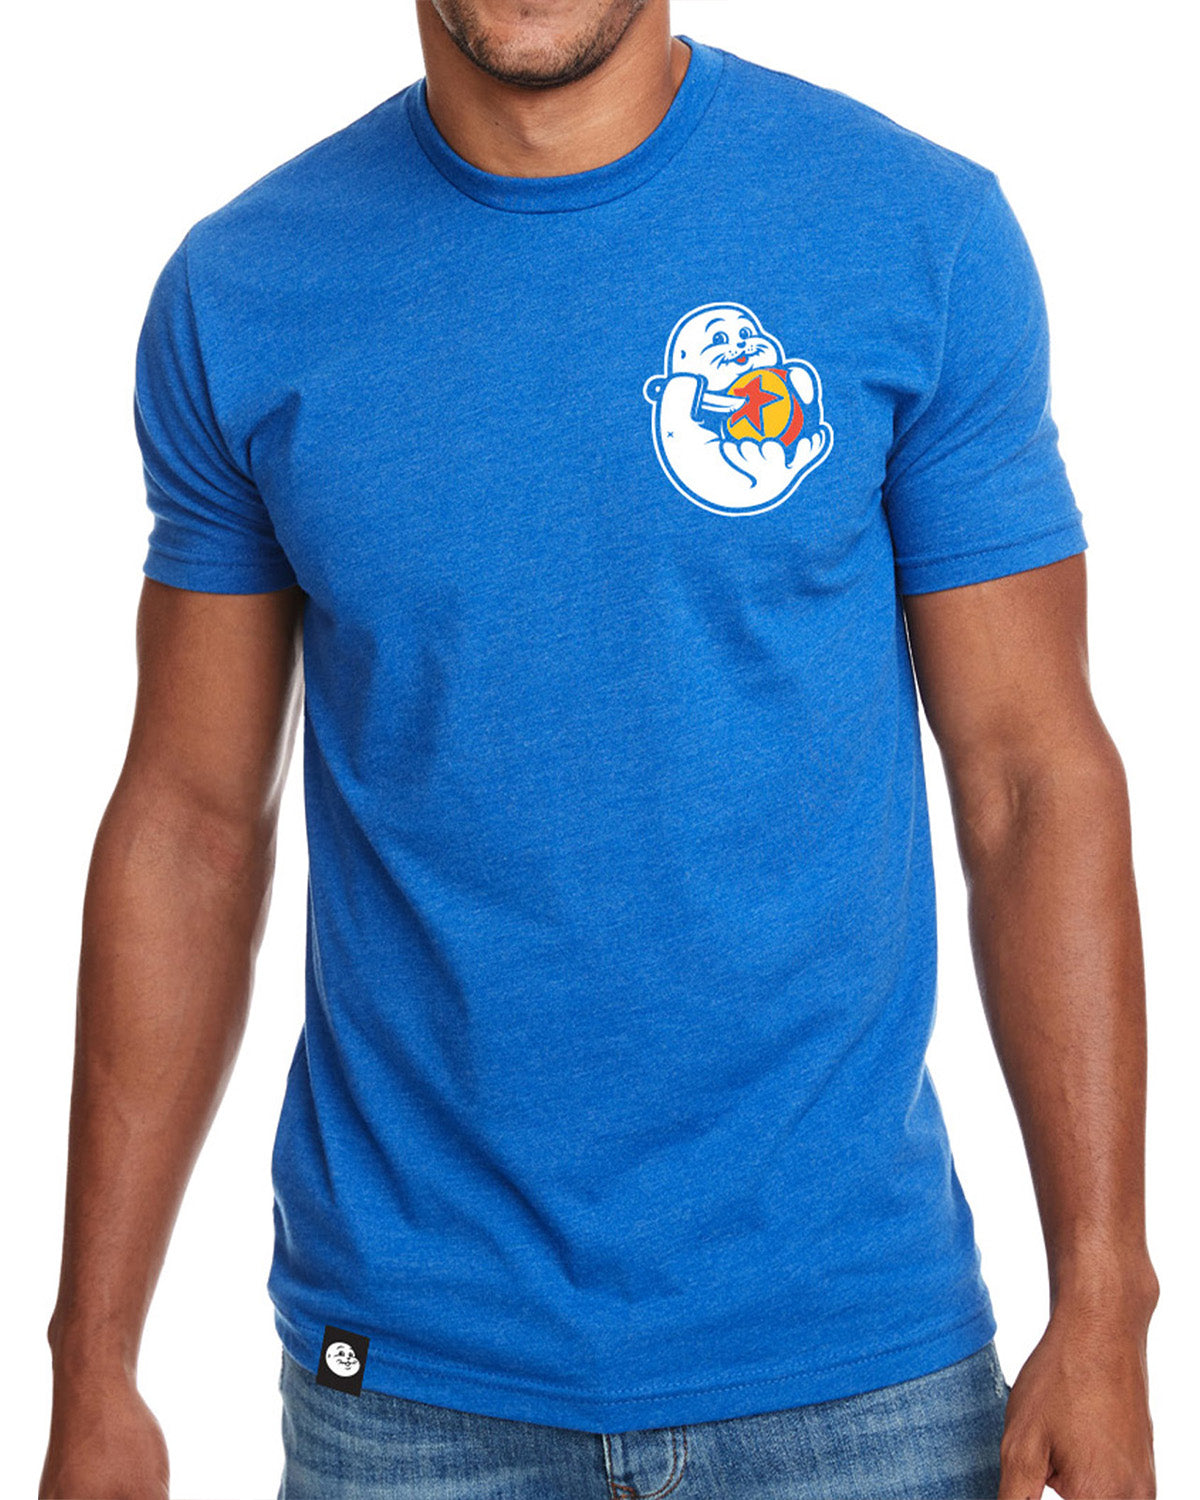 T-shirt Phoque Apparel Phoque bleu royal